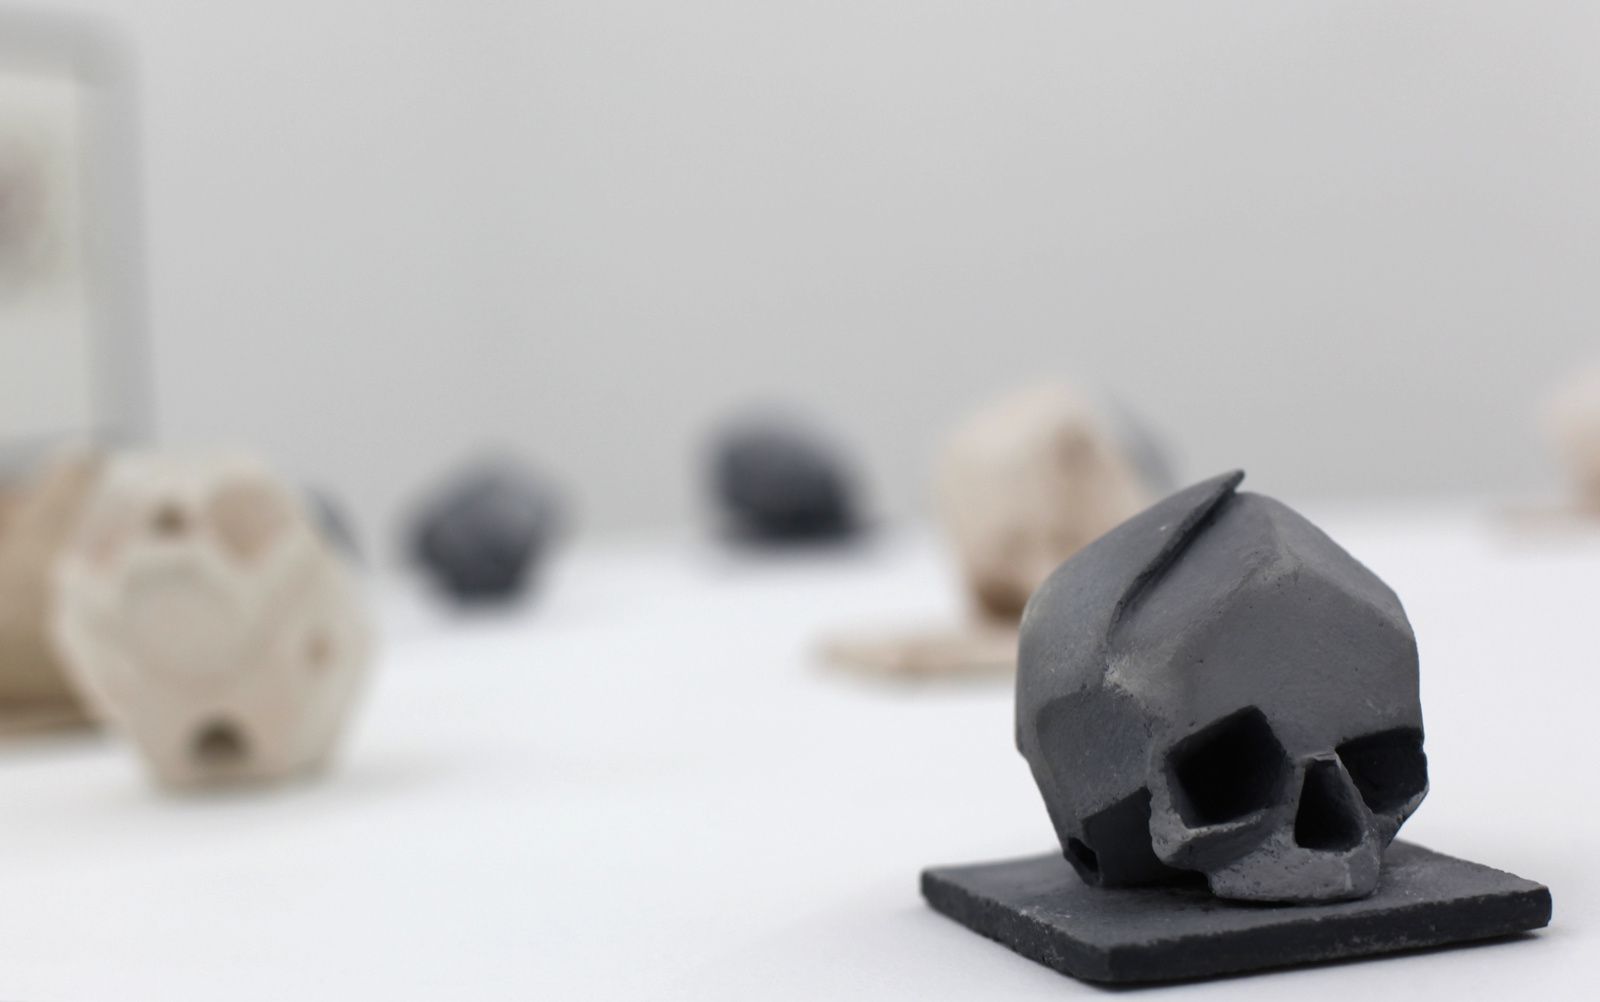 Détail "Crânes embryonnaires", 2006 à 2013 de William Chattaway - Courtesy galerie DIX291 © Photo Éric Simon